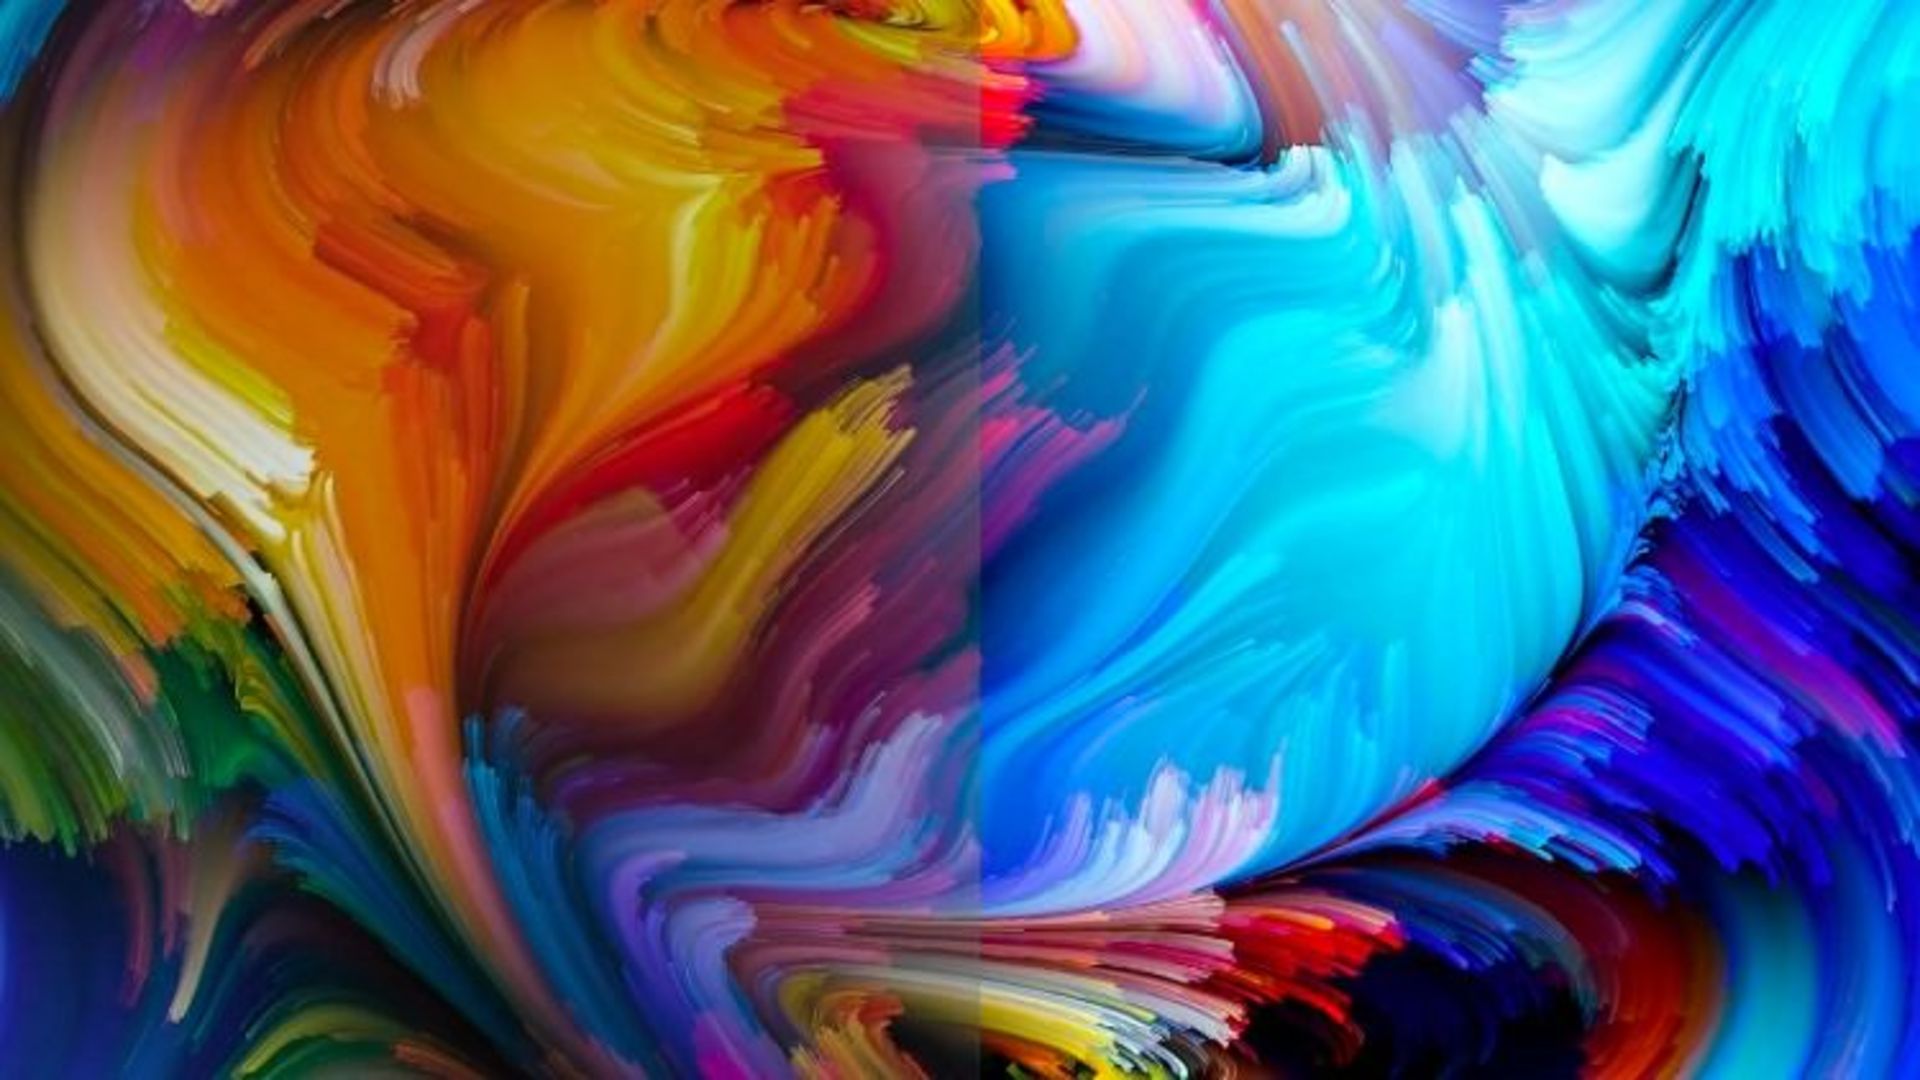 مرجع متخصصين ايران رنگ تركيب‌رنگ شفاف و درخشان در كنار رنگ‌هاي كدر